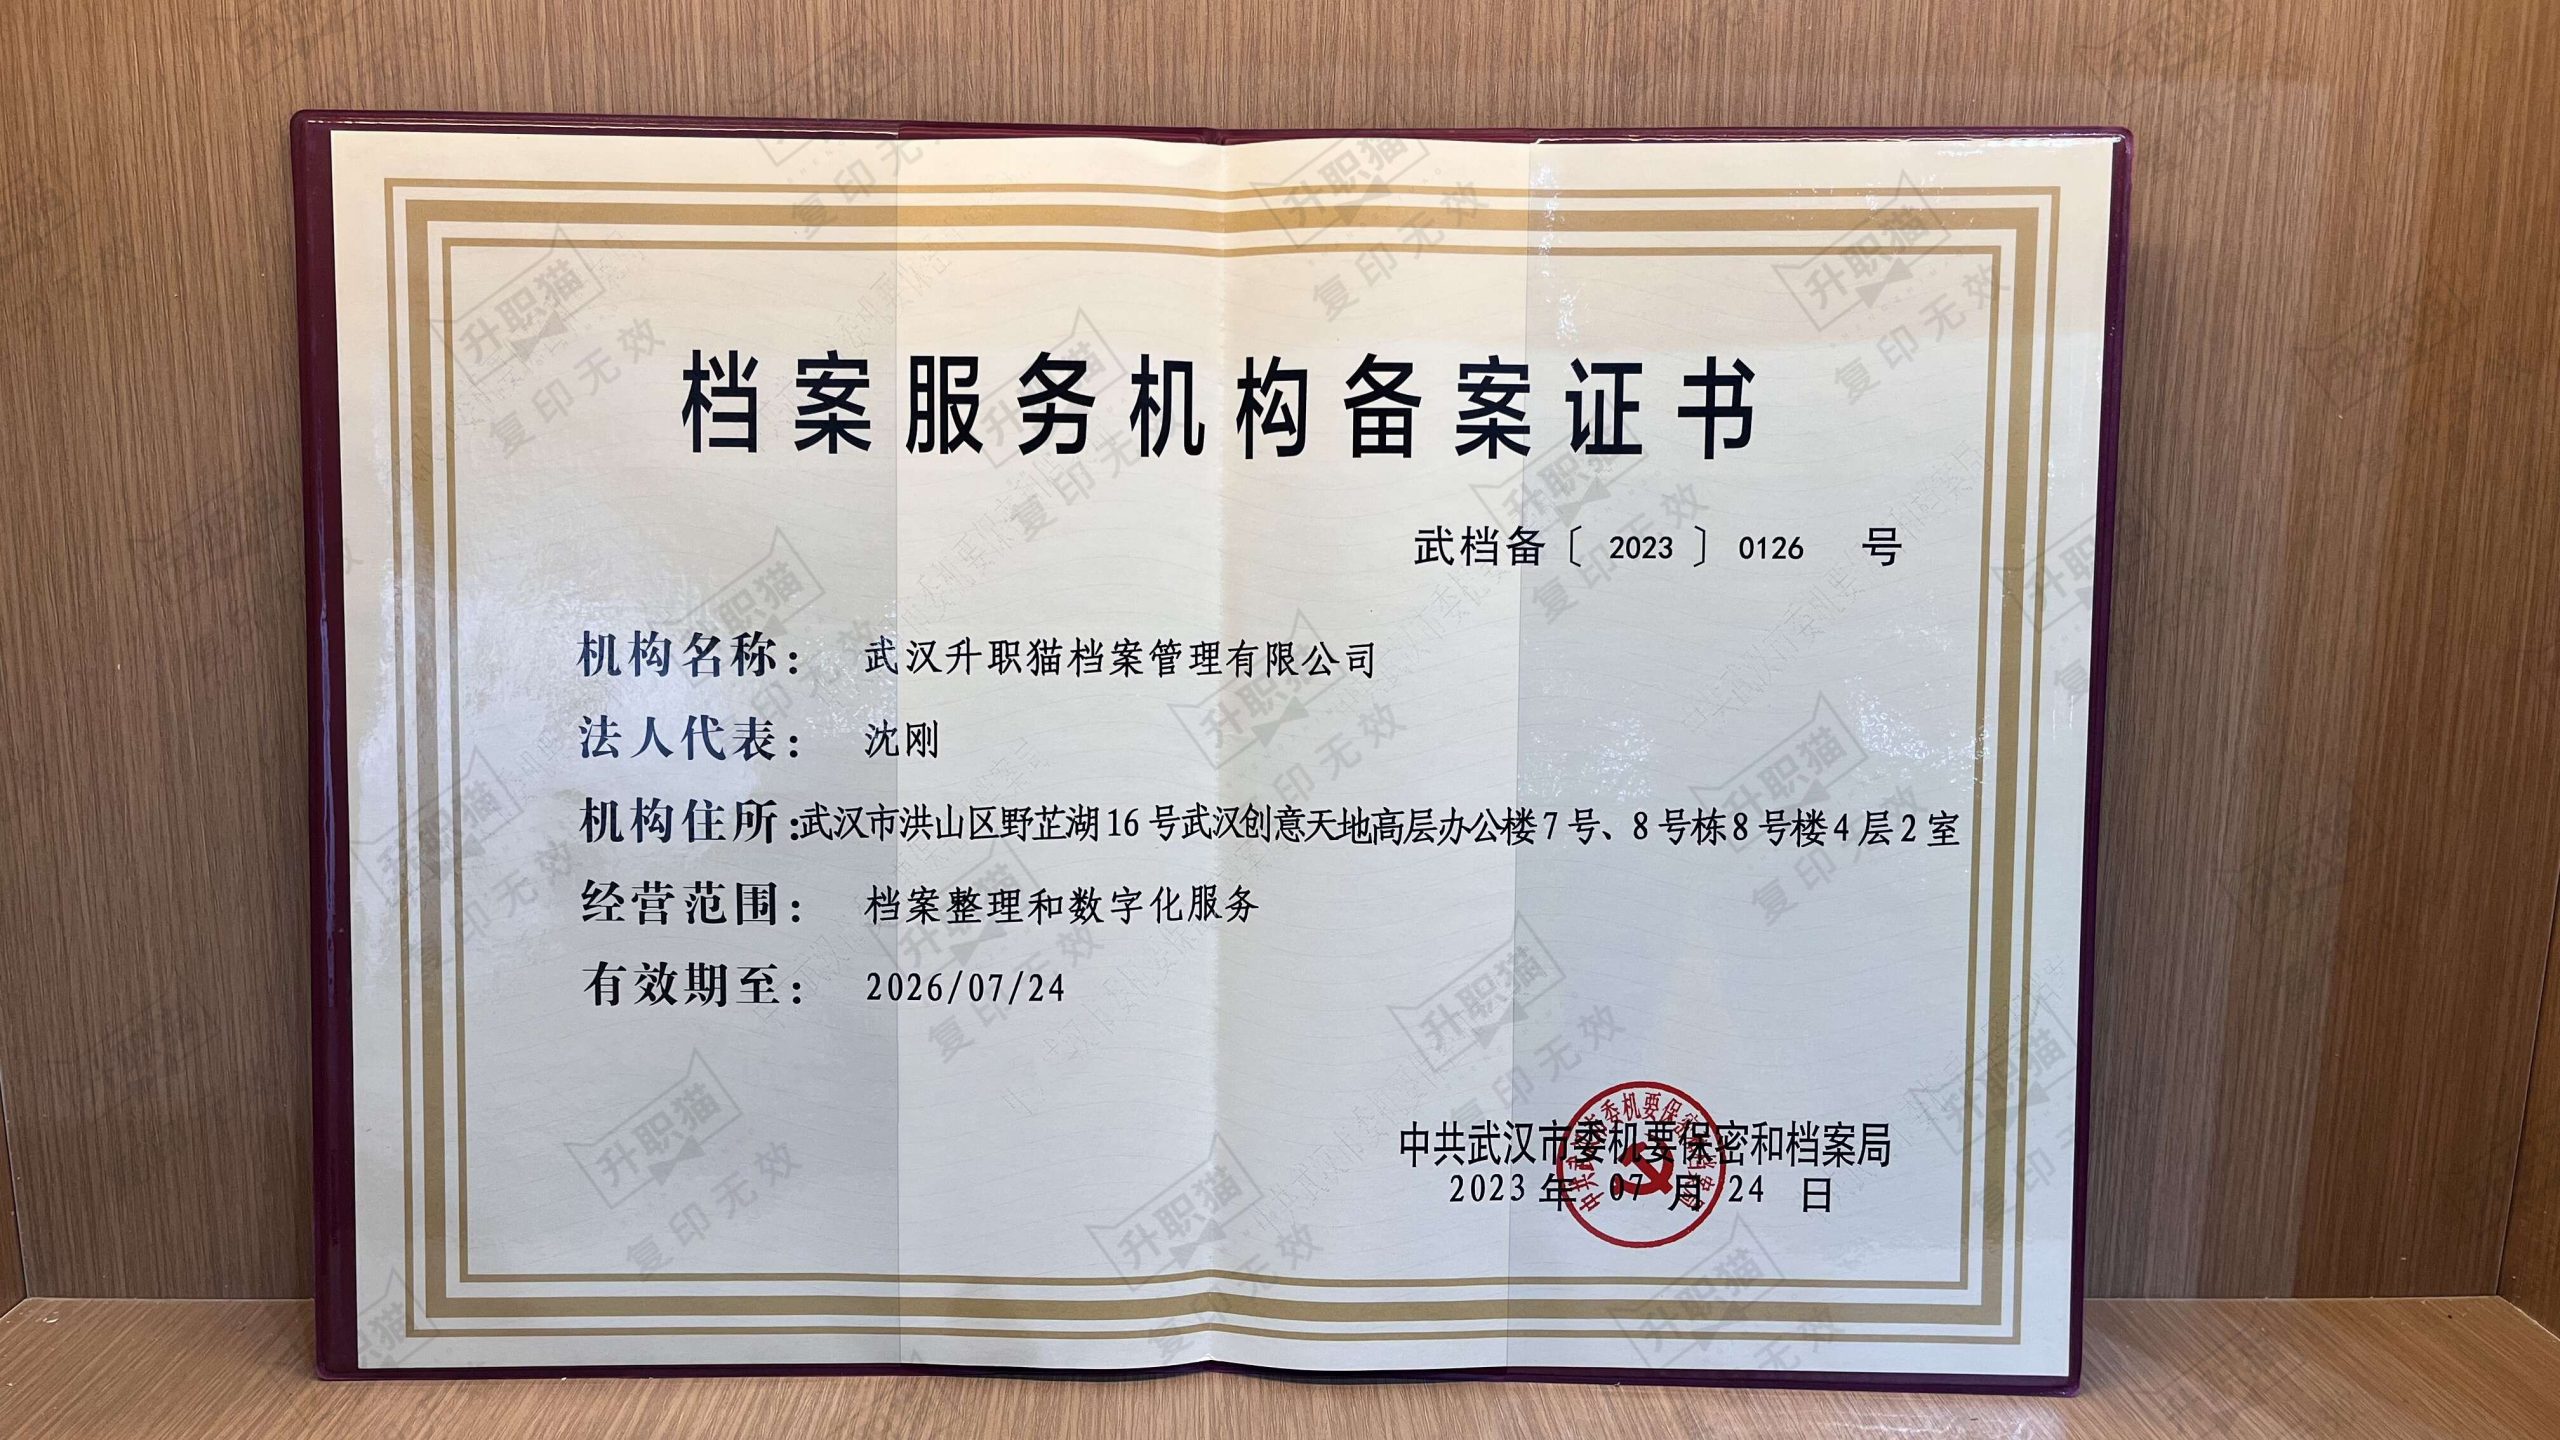 上海个人档案存放机构教你如何存档!